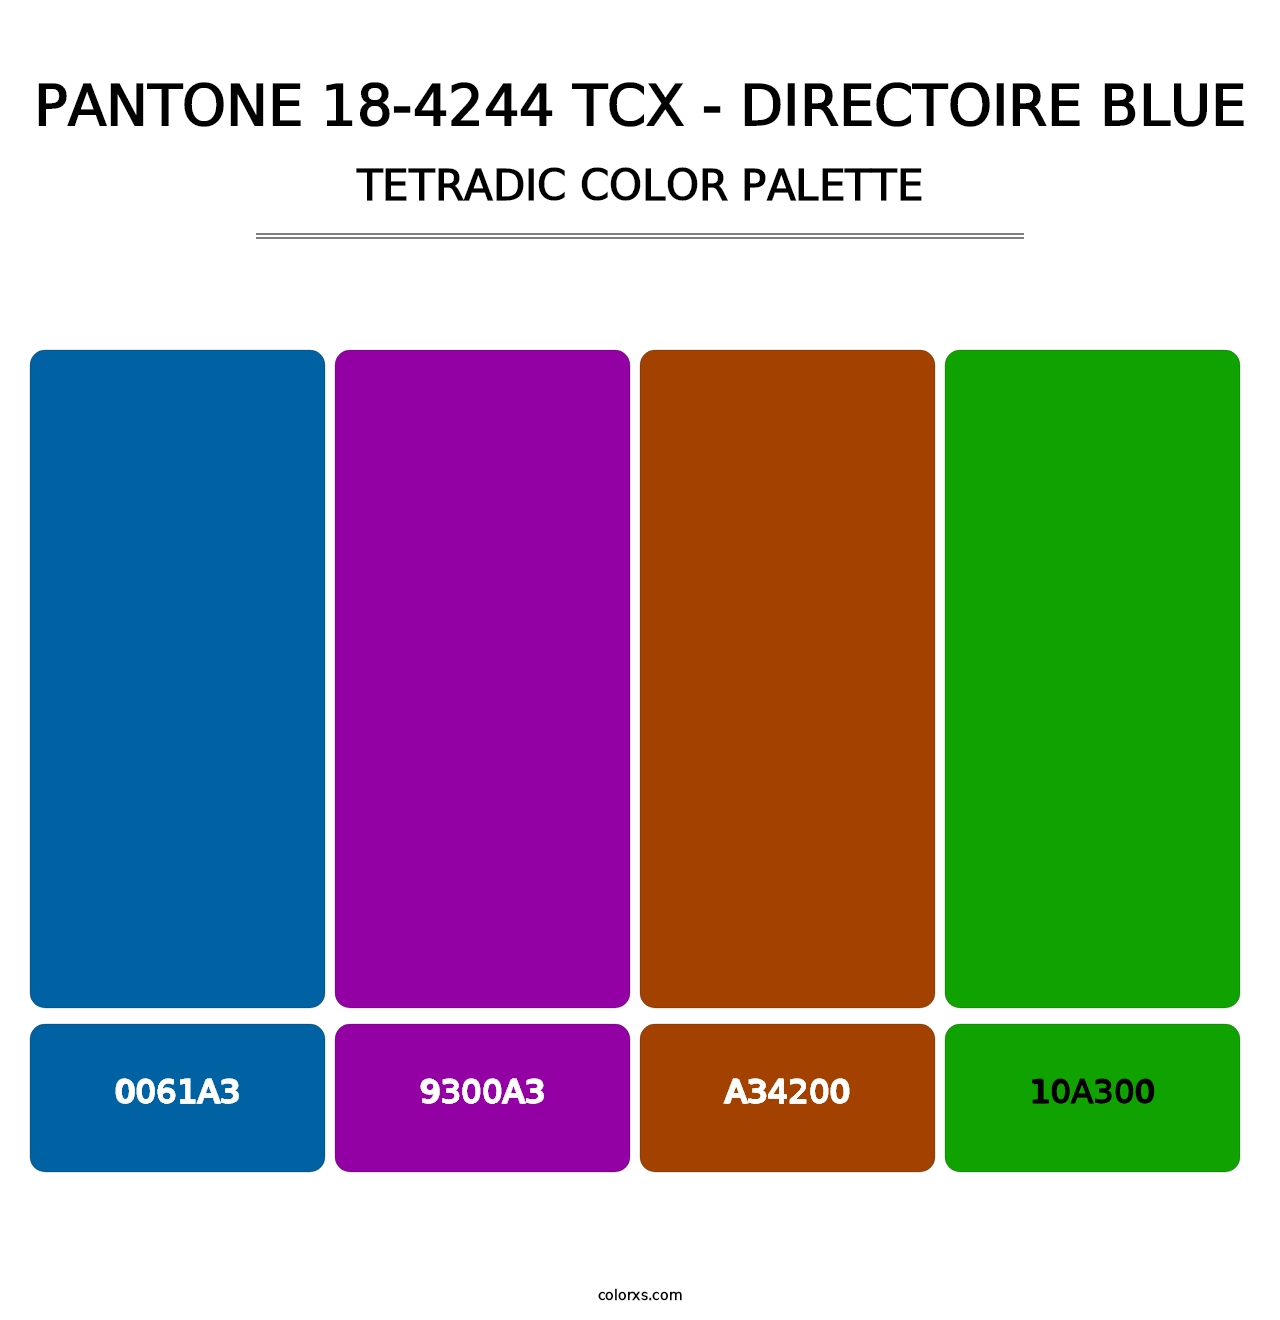 PANTONE 18-4244 TCX - Directoire Blue - Tetradic Color Palette